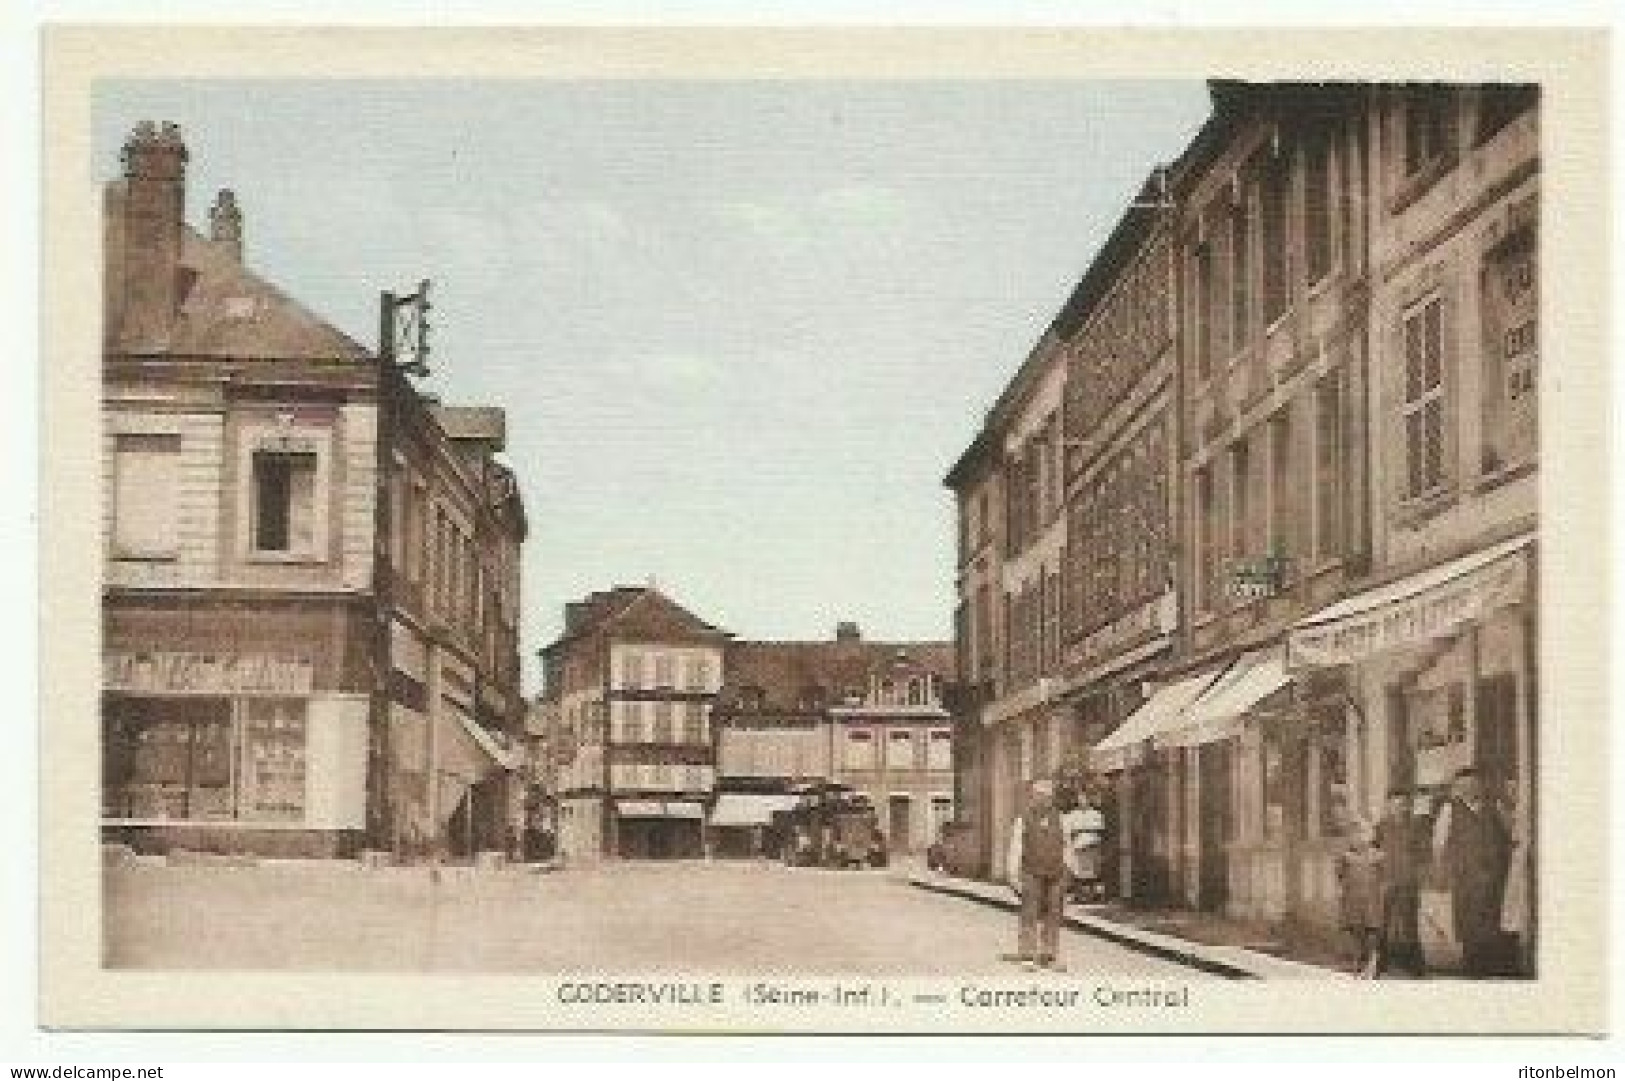 Goderville 76 Carrefour Central Pub Bière Paillette - Goderville